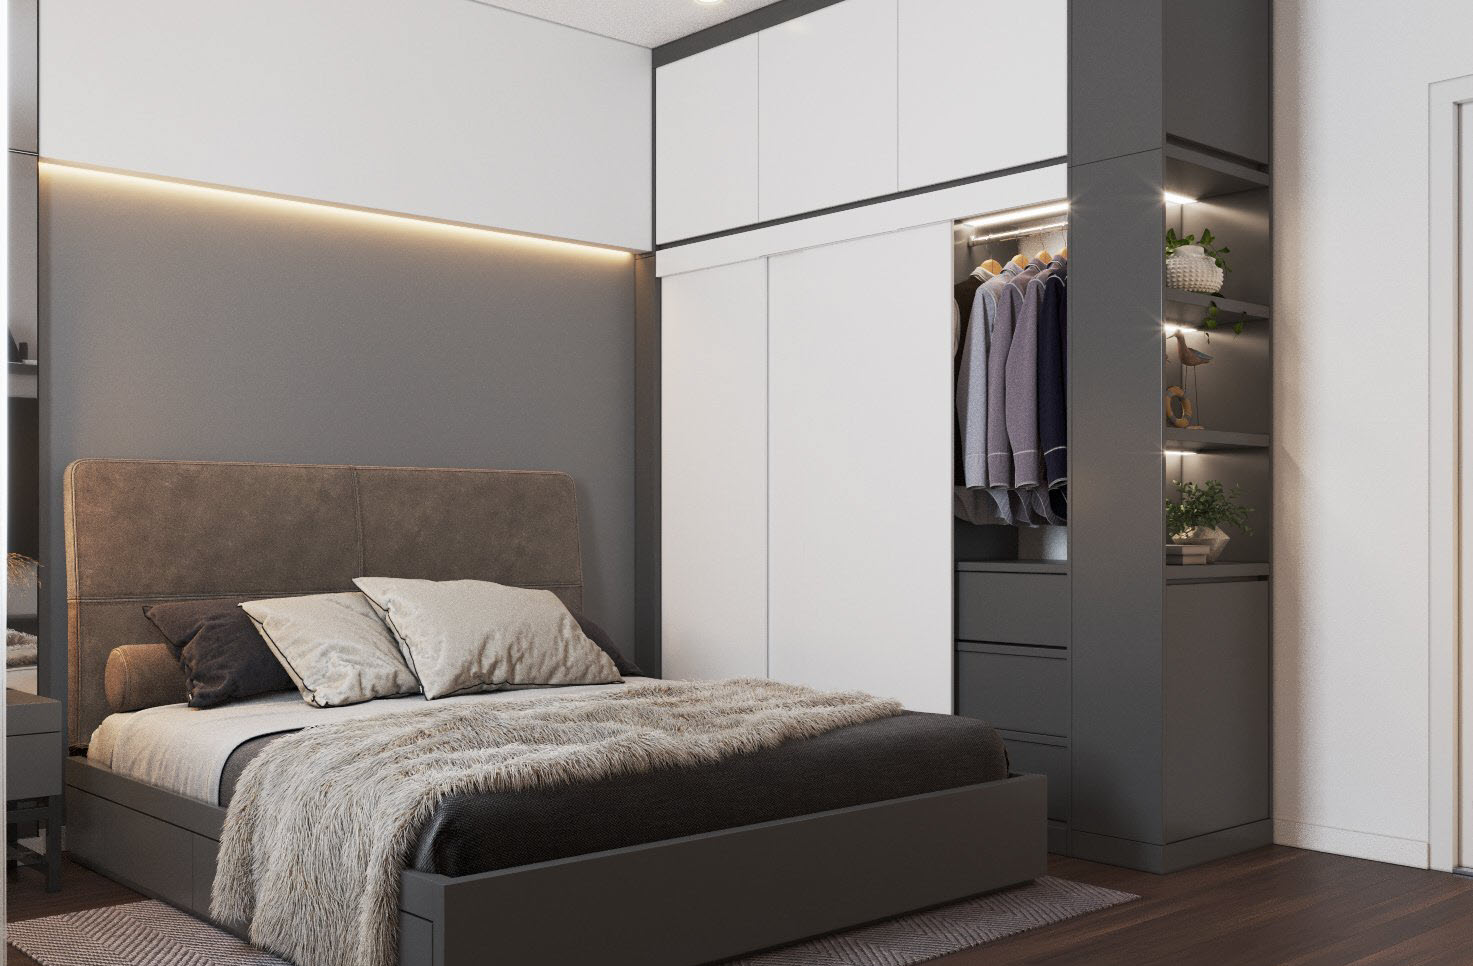 Phòng ngủ sử dụng màu trung tính xám - trắng sang trọng, thiết kế nội thất tối giản nhằm mang lại cho người dùng cảm giác thư giãn tối đa.